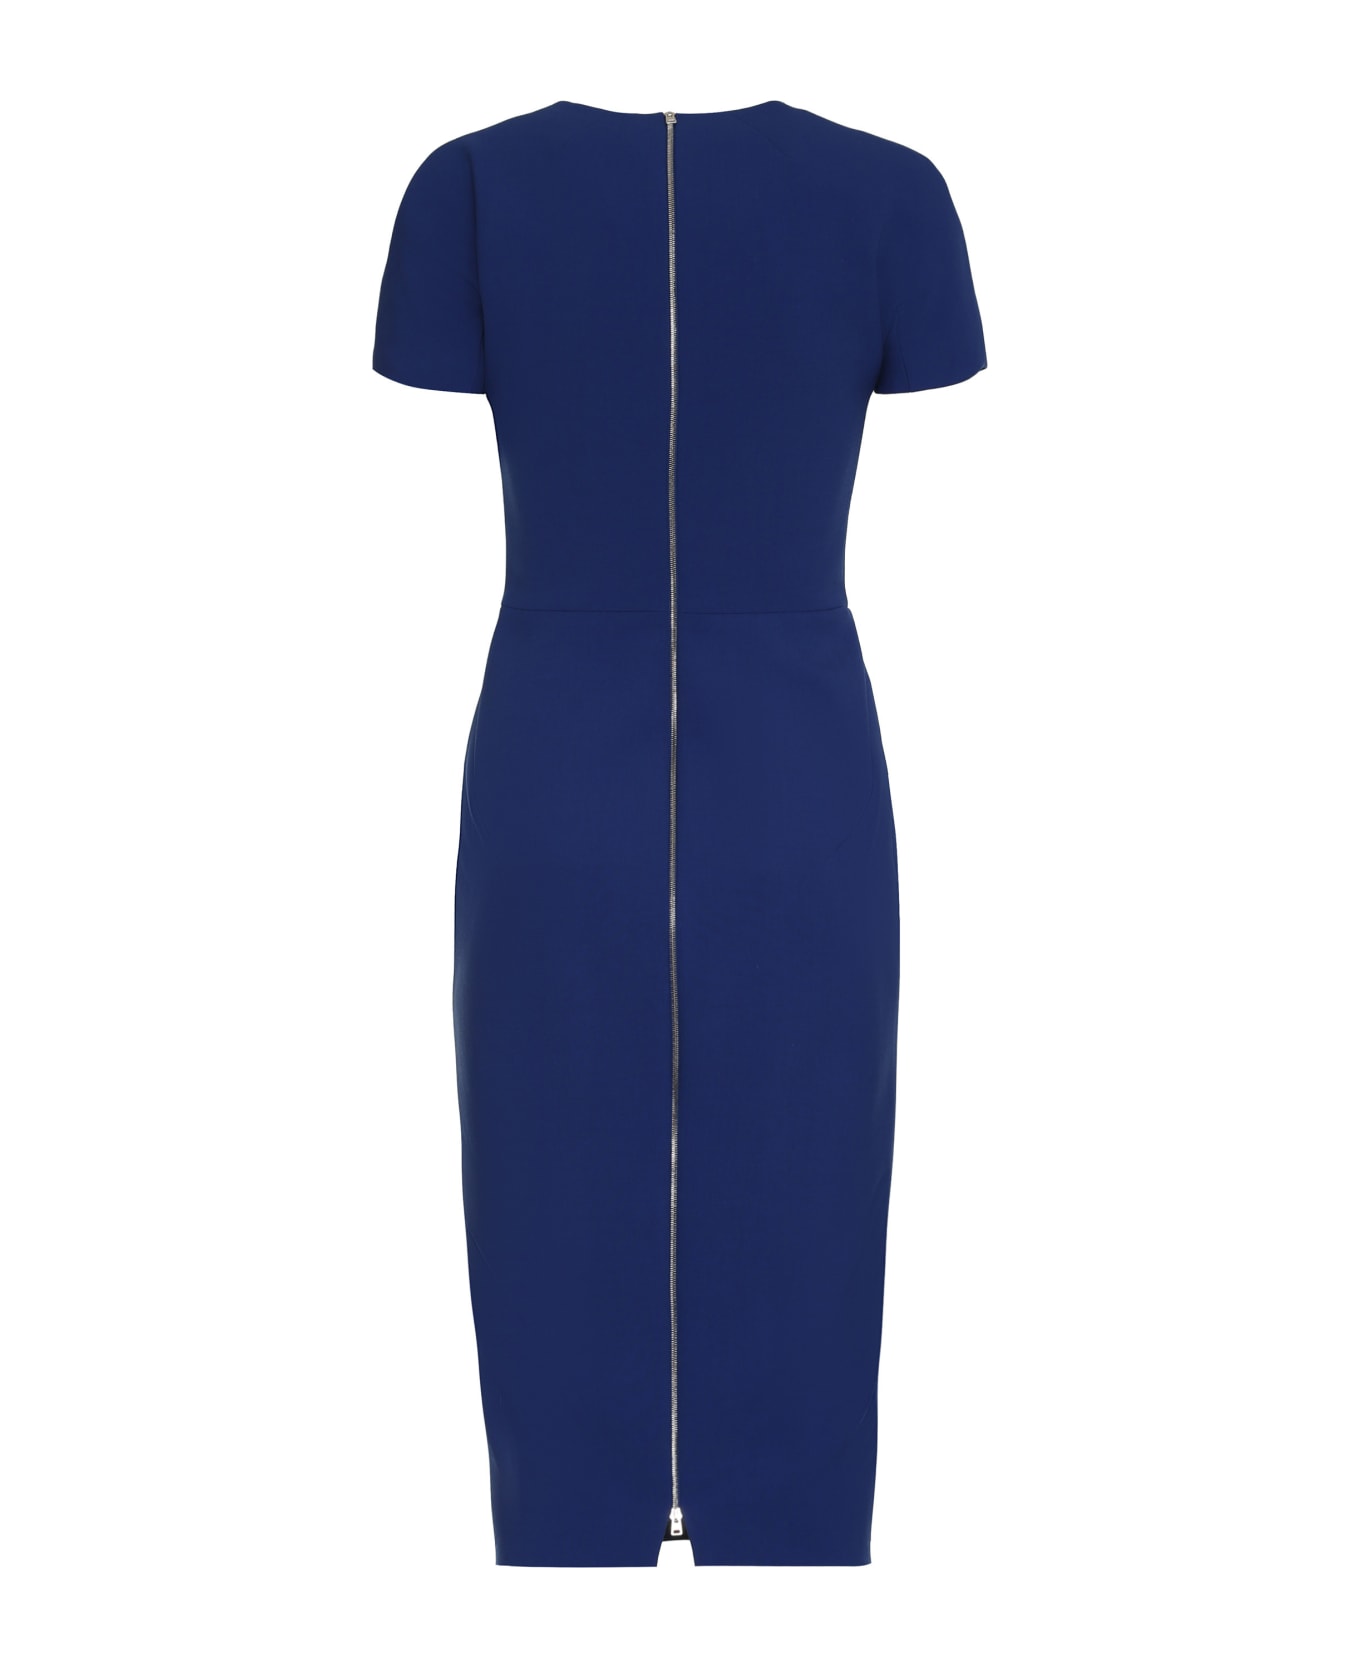 Victoria Beckham Wool-blend Dress - blue